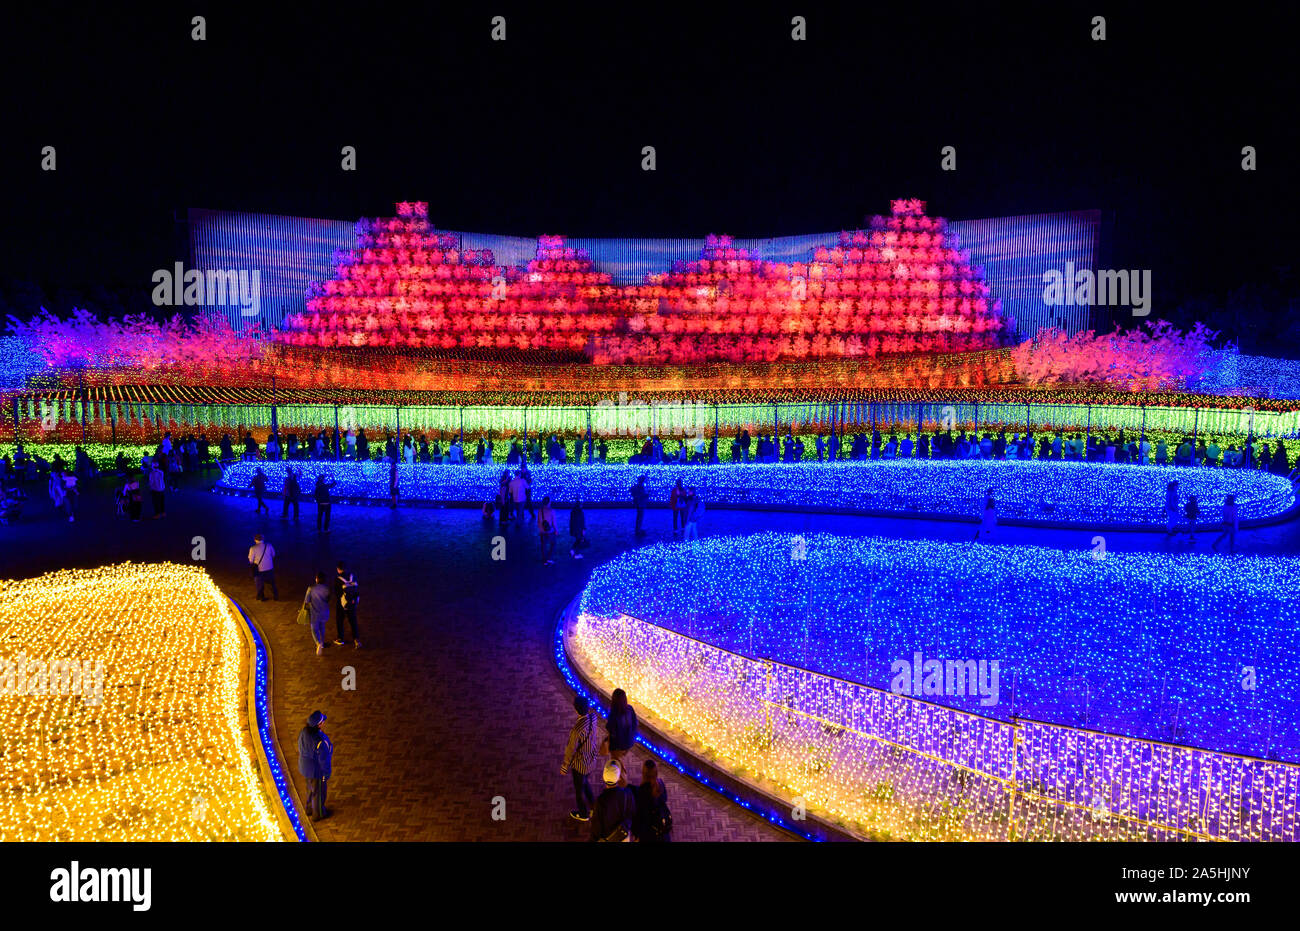 Autumn view display at Nabana no Sato, winter illumination 2020. Attractions of Nagoya. Stock Photo